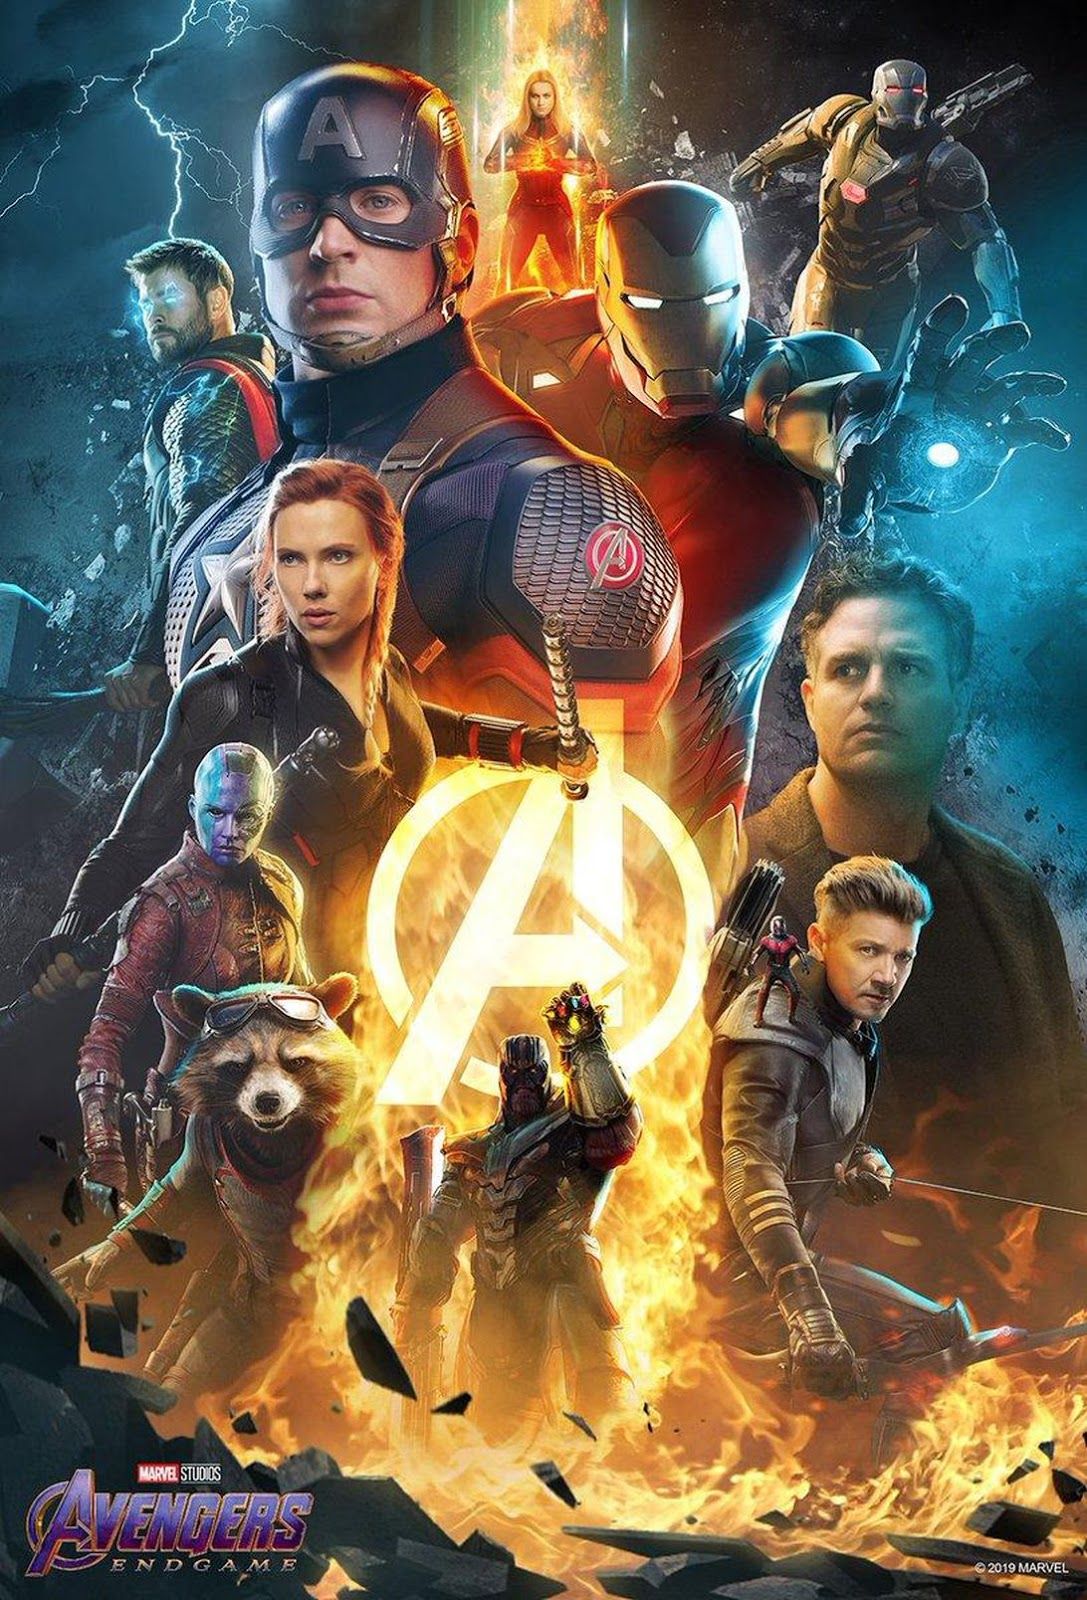 Avengers Endgame HD Wallpaper For Mobile